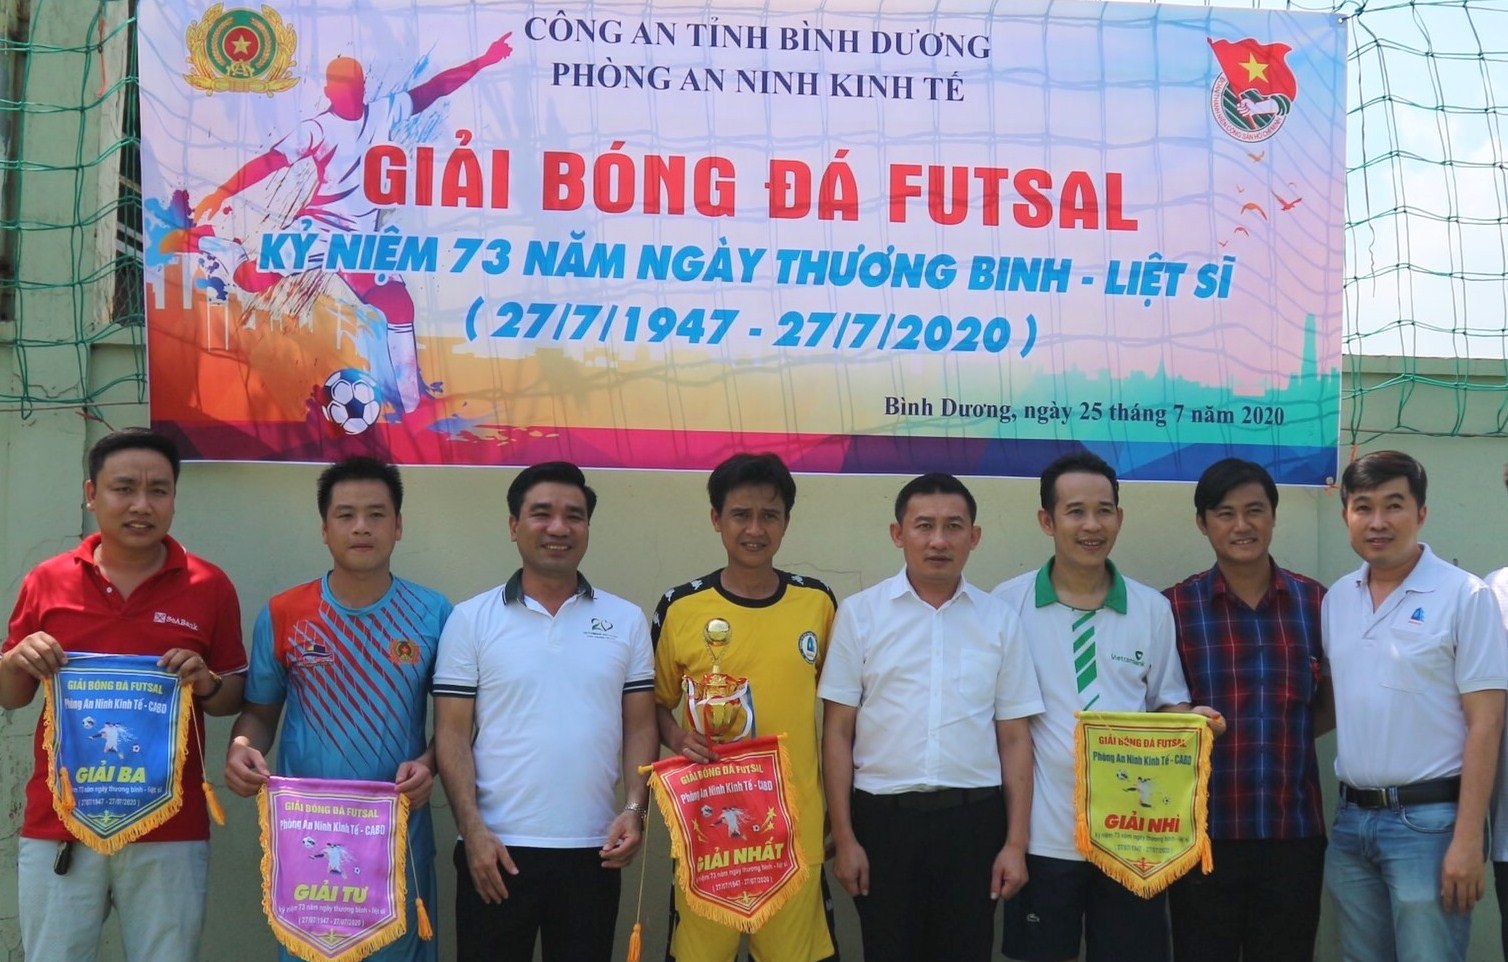 Đoàn cơ sở Vietcombank Bình Dương tham gia giao lưu thể thao 